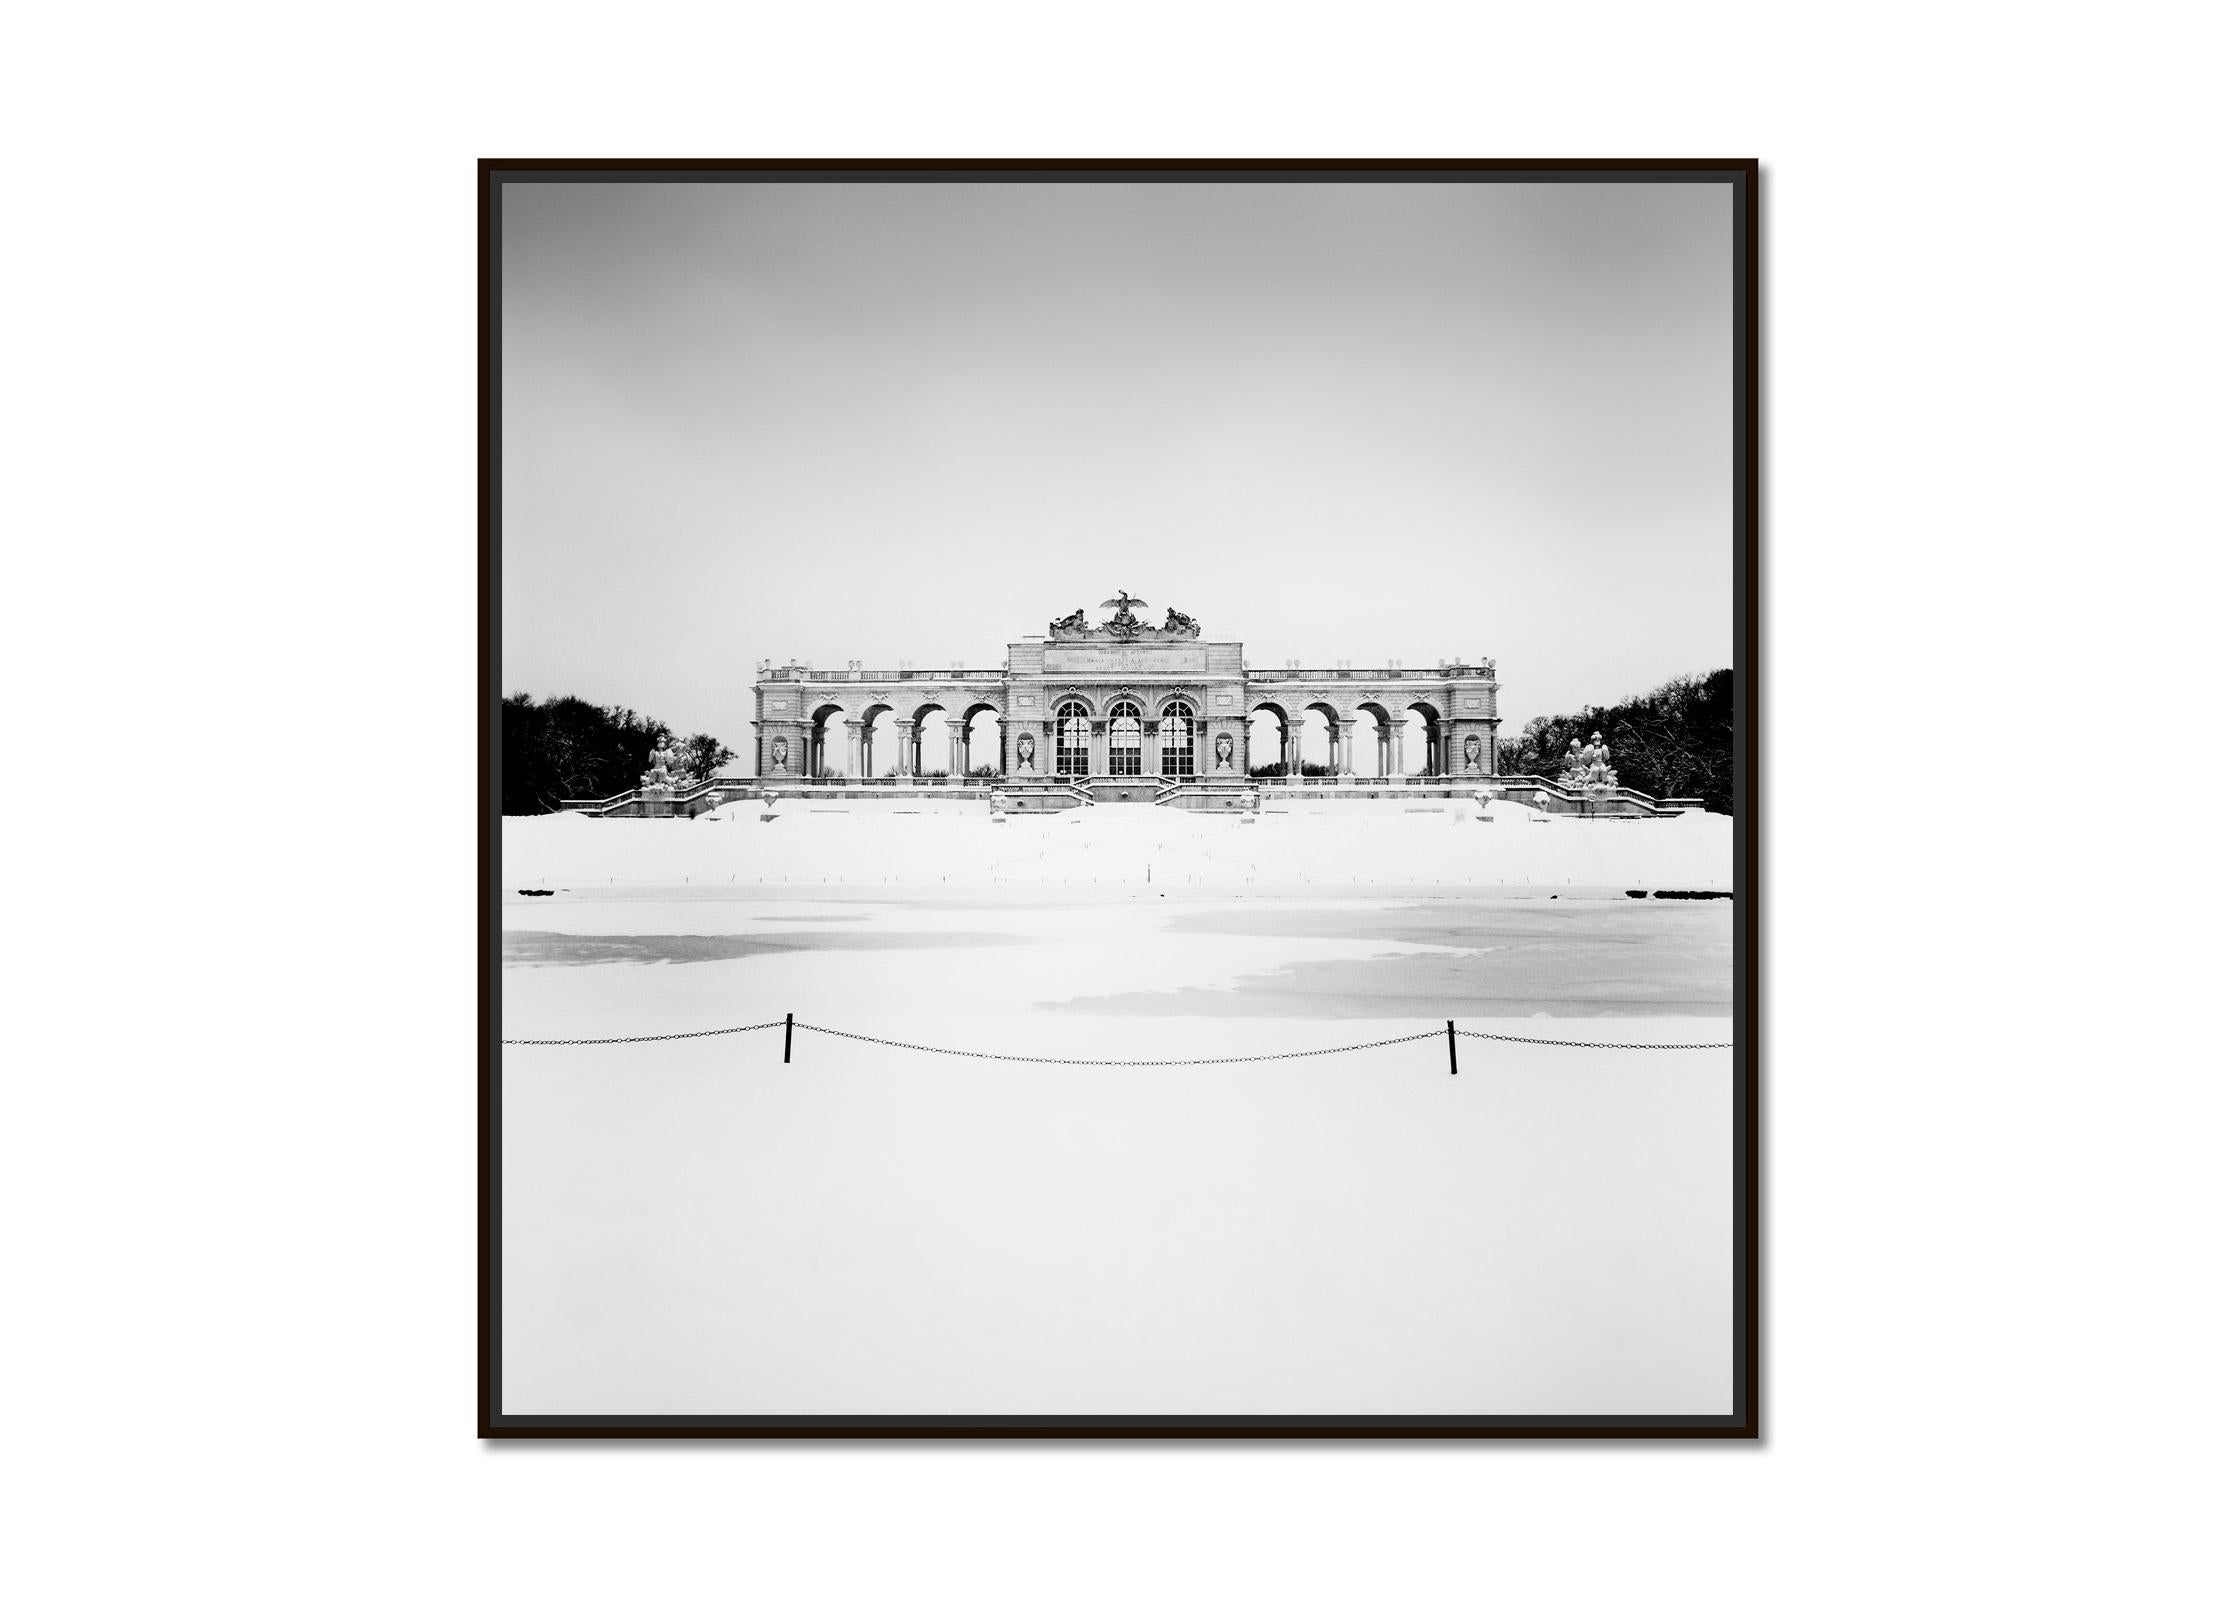 Gloriette Winter, Schloss Schoenbrunn, Vienna, B&W cityscape photography print - Photograph by Gerald Berghammer